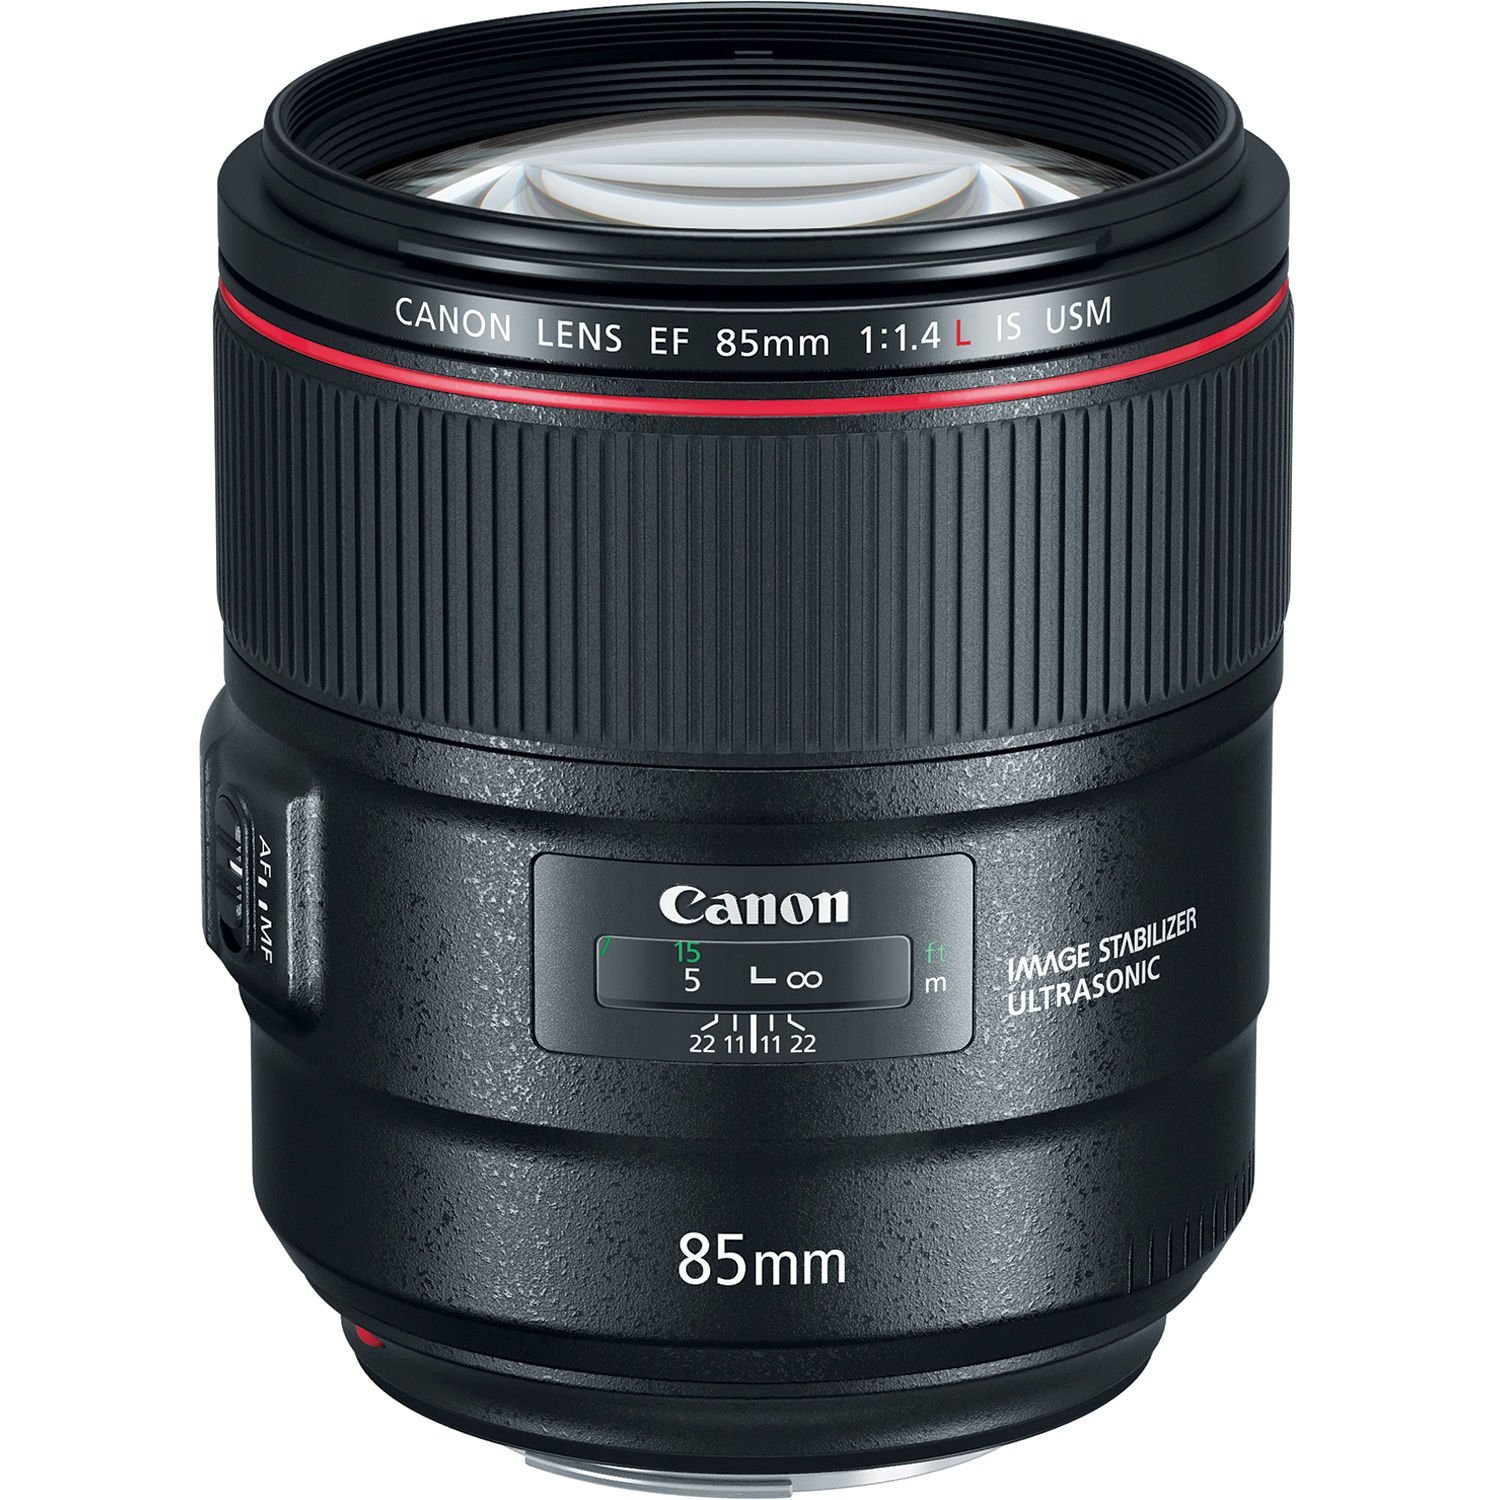 Canon EF 85mm f/1.4L IS USM được thiết kế cho dòng máy ảnh DSLR Full-Frame